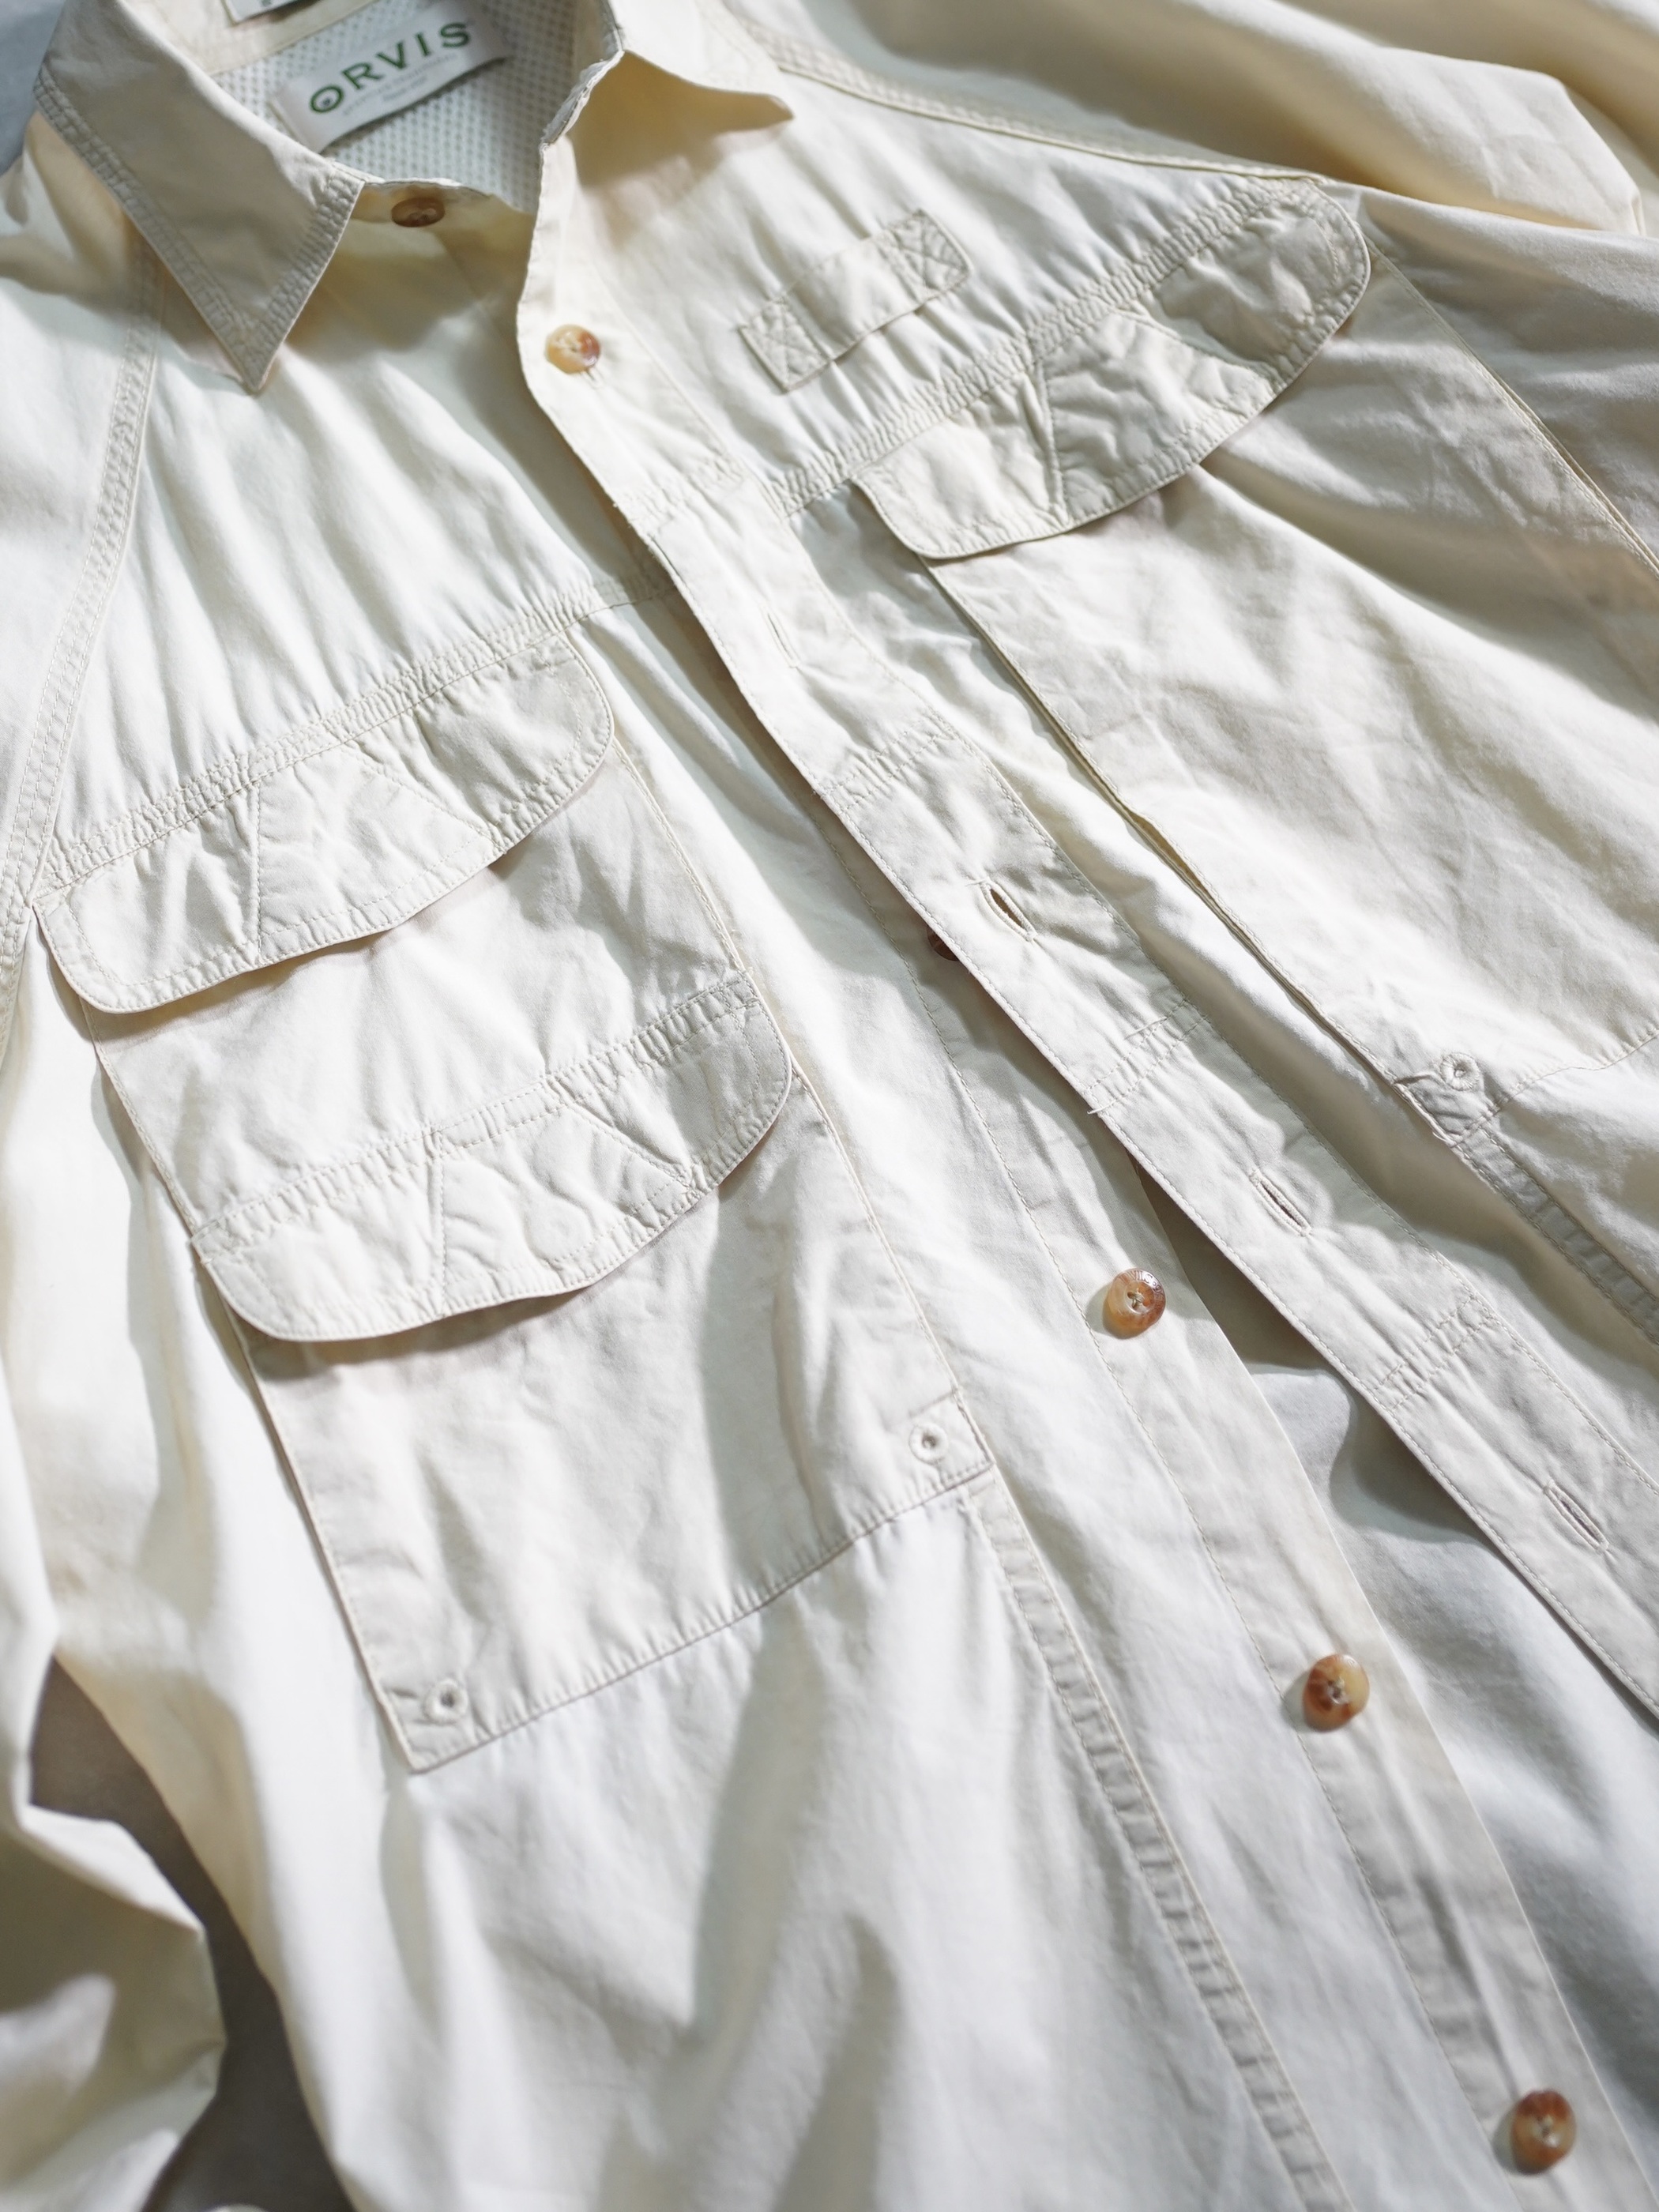 ORVIS Cotton fishing shirts / Made in Hong Kong